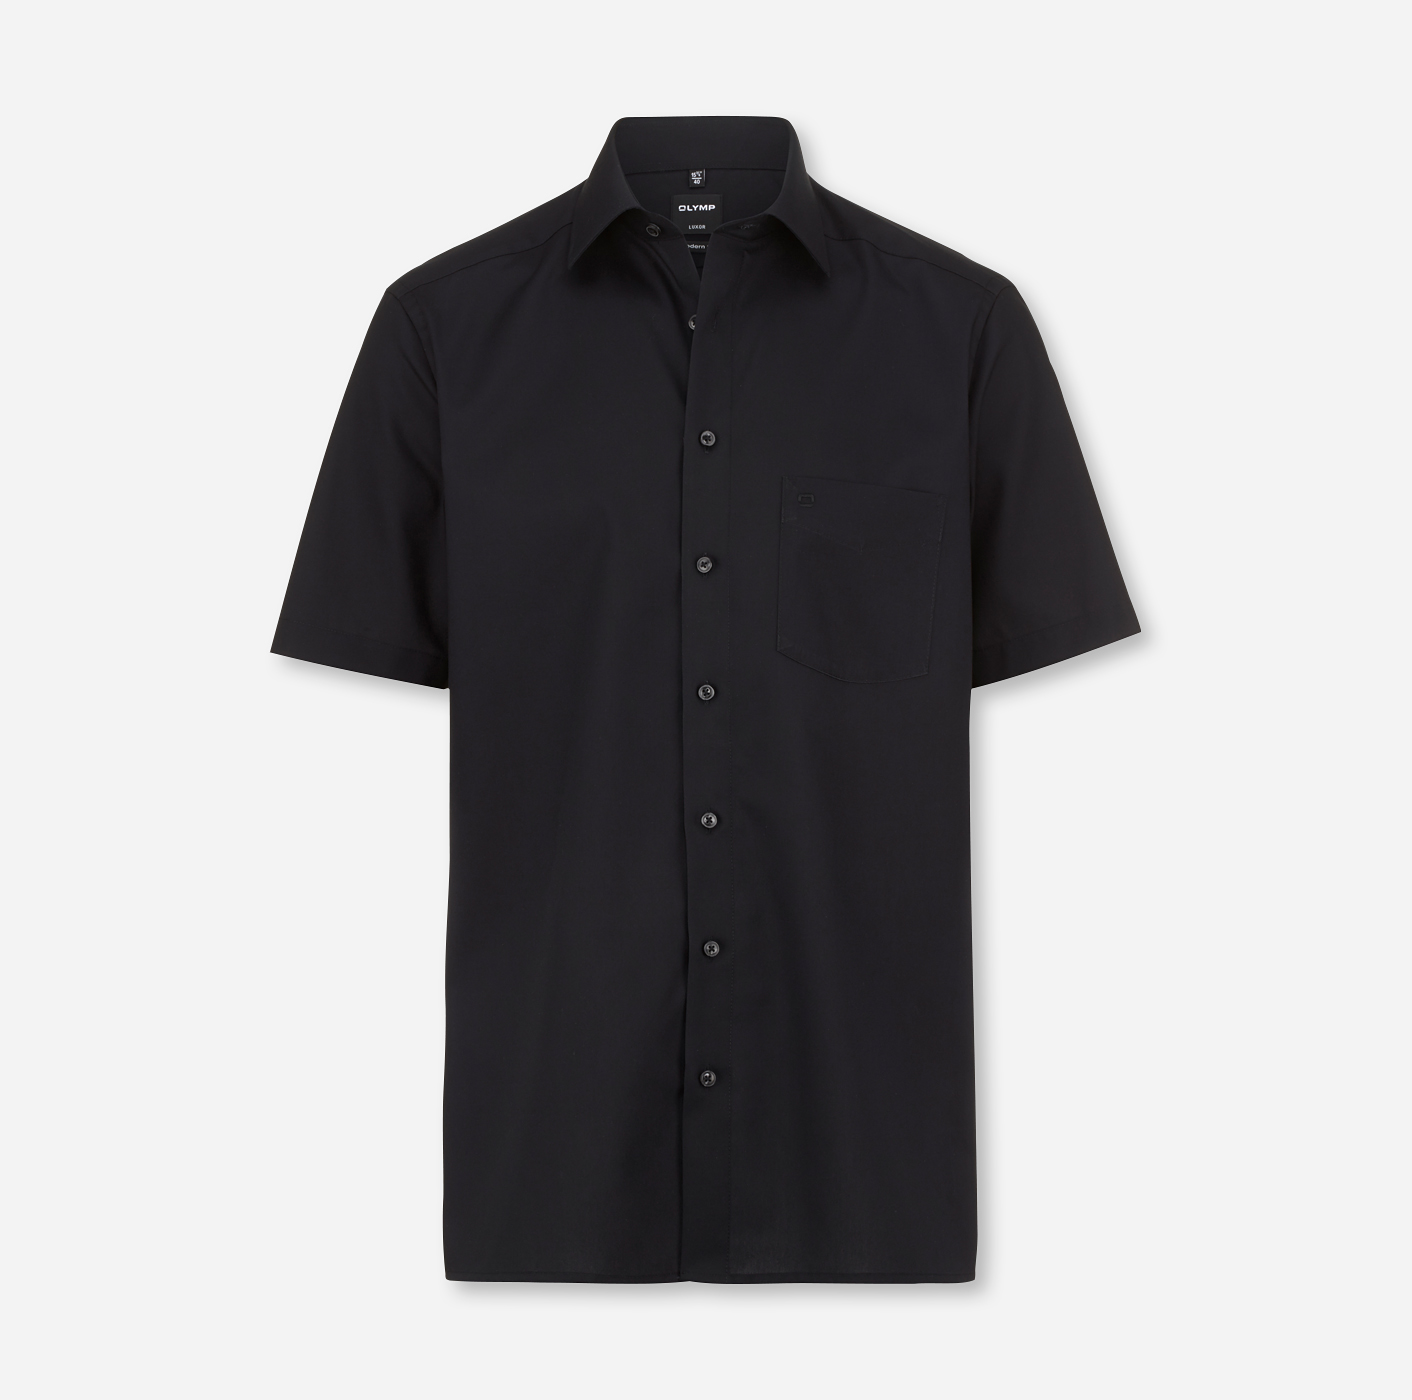 Perfekte Qualität! Kurzarm-Hemd OLYMP Luxor modern mit schwarz - Kragenstick! fit